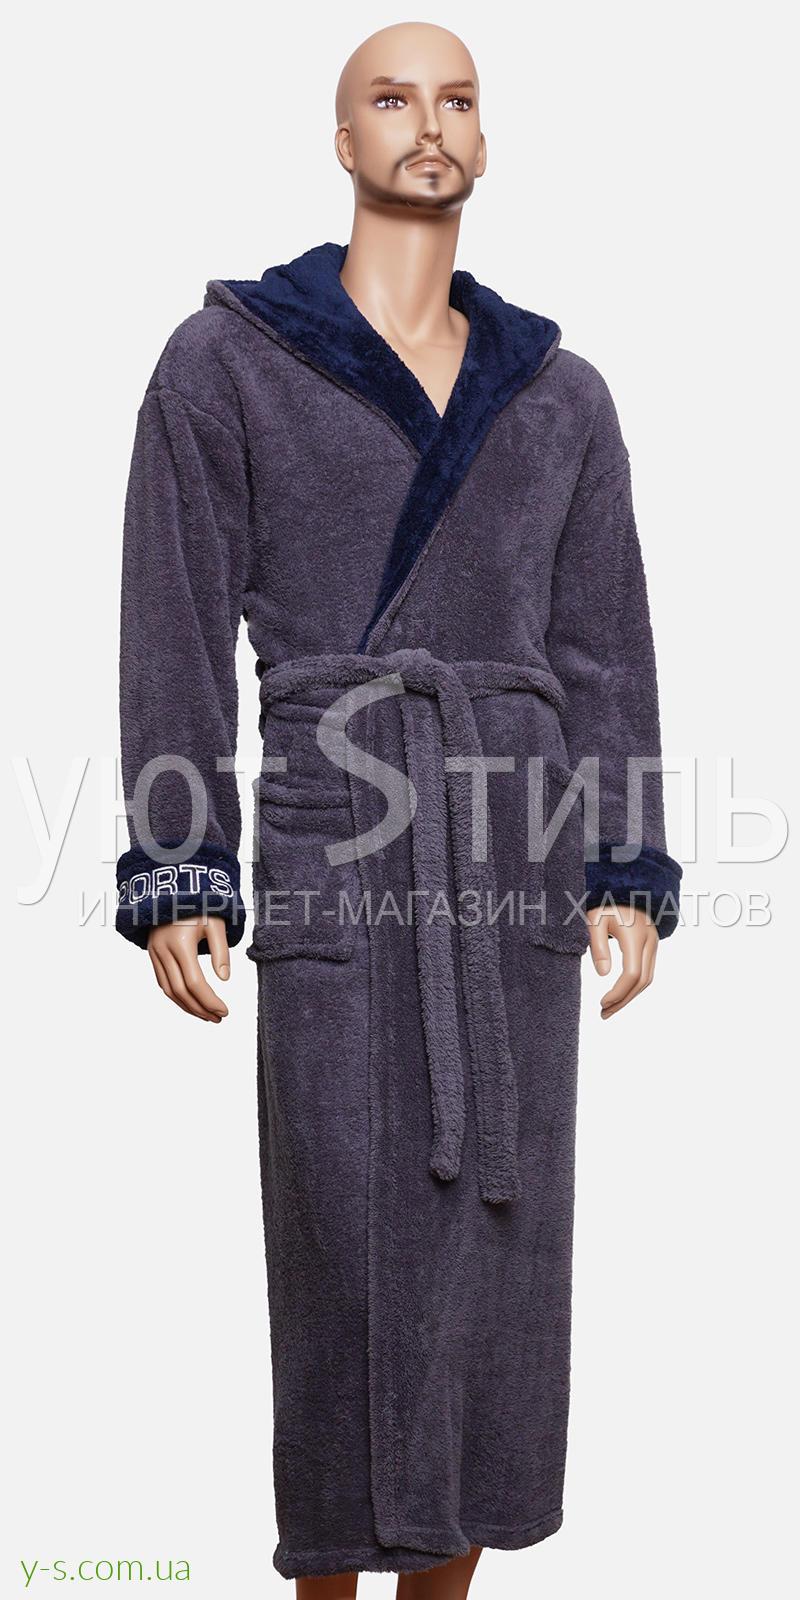 Мужской халат серого цвета WM1728 с надписью 